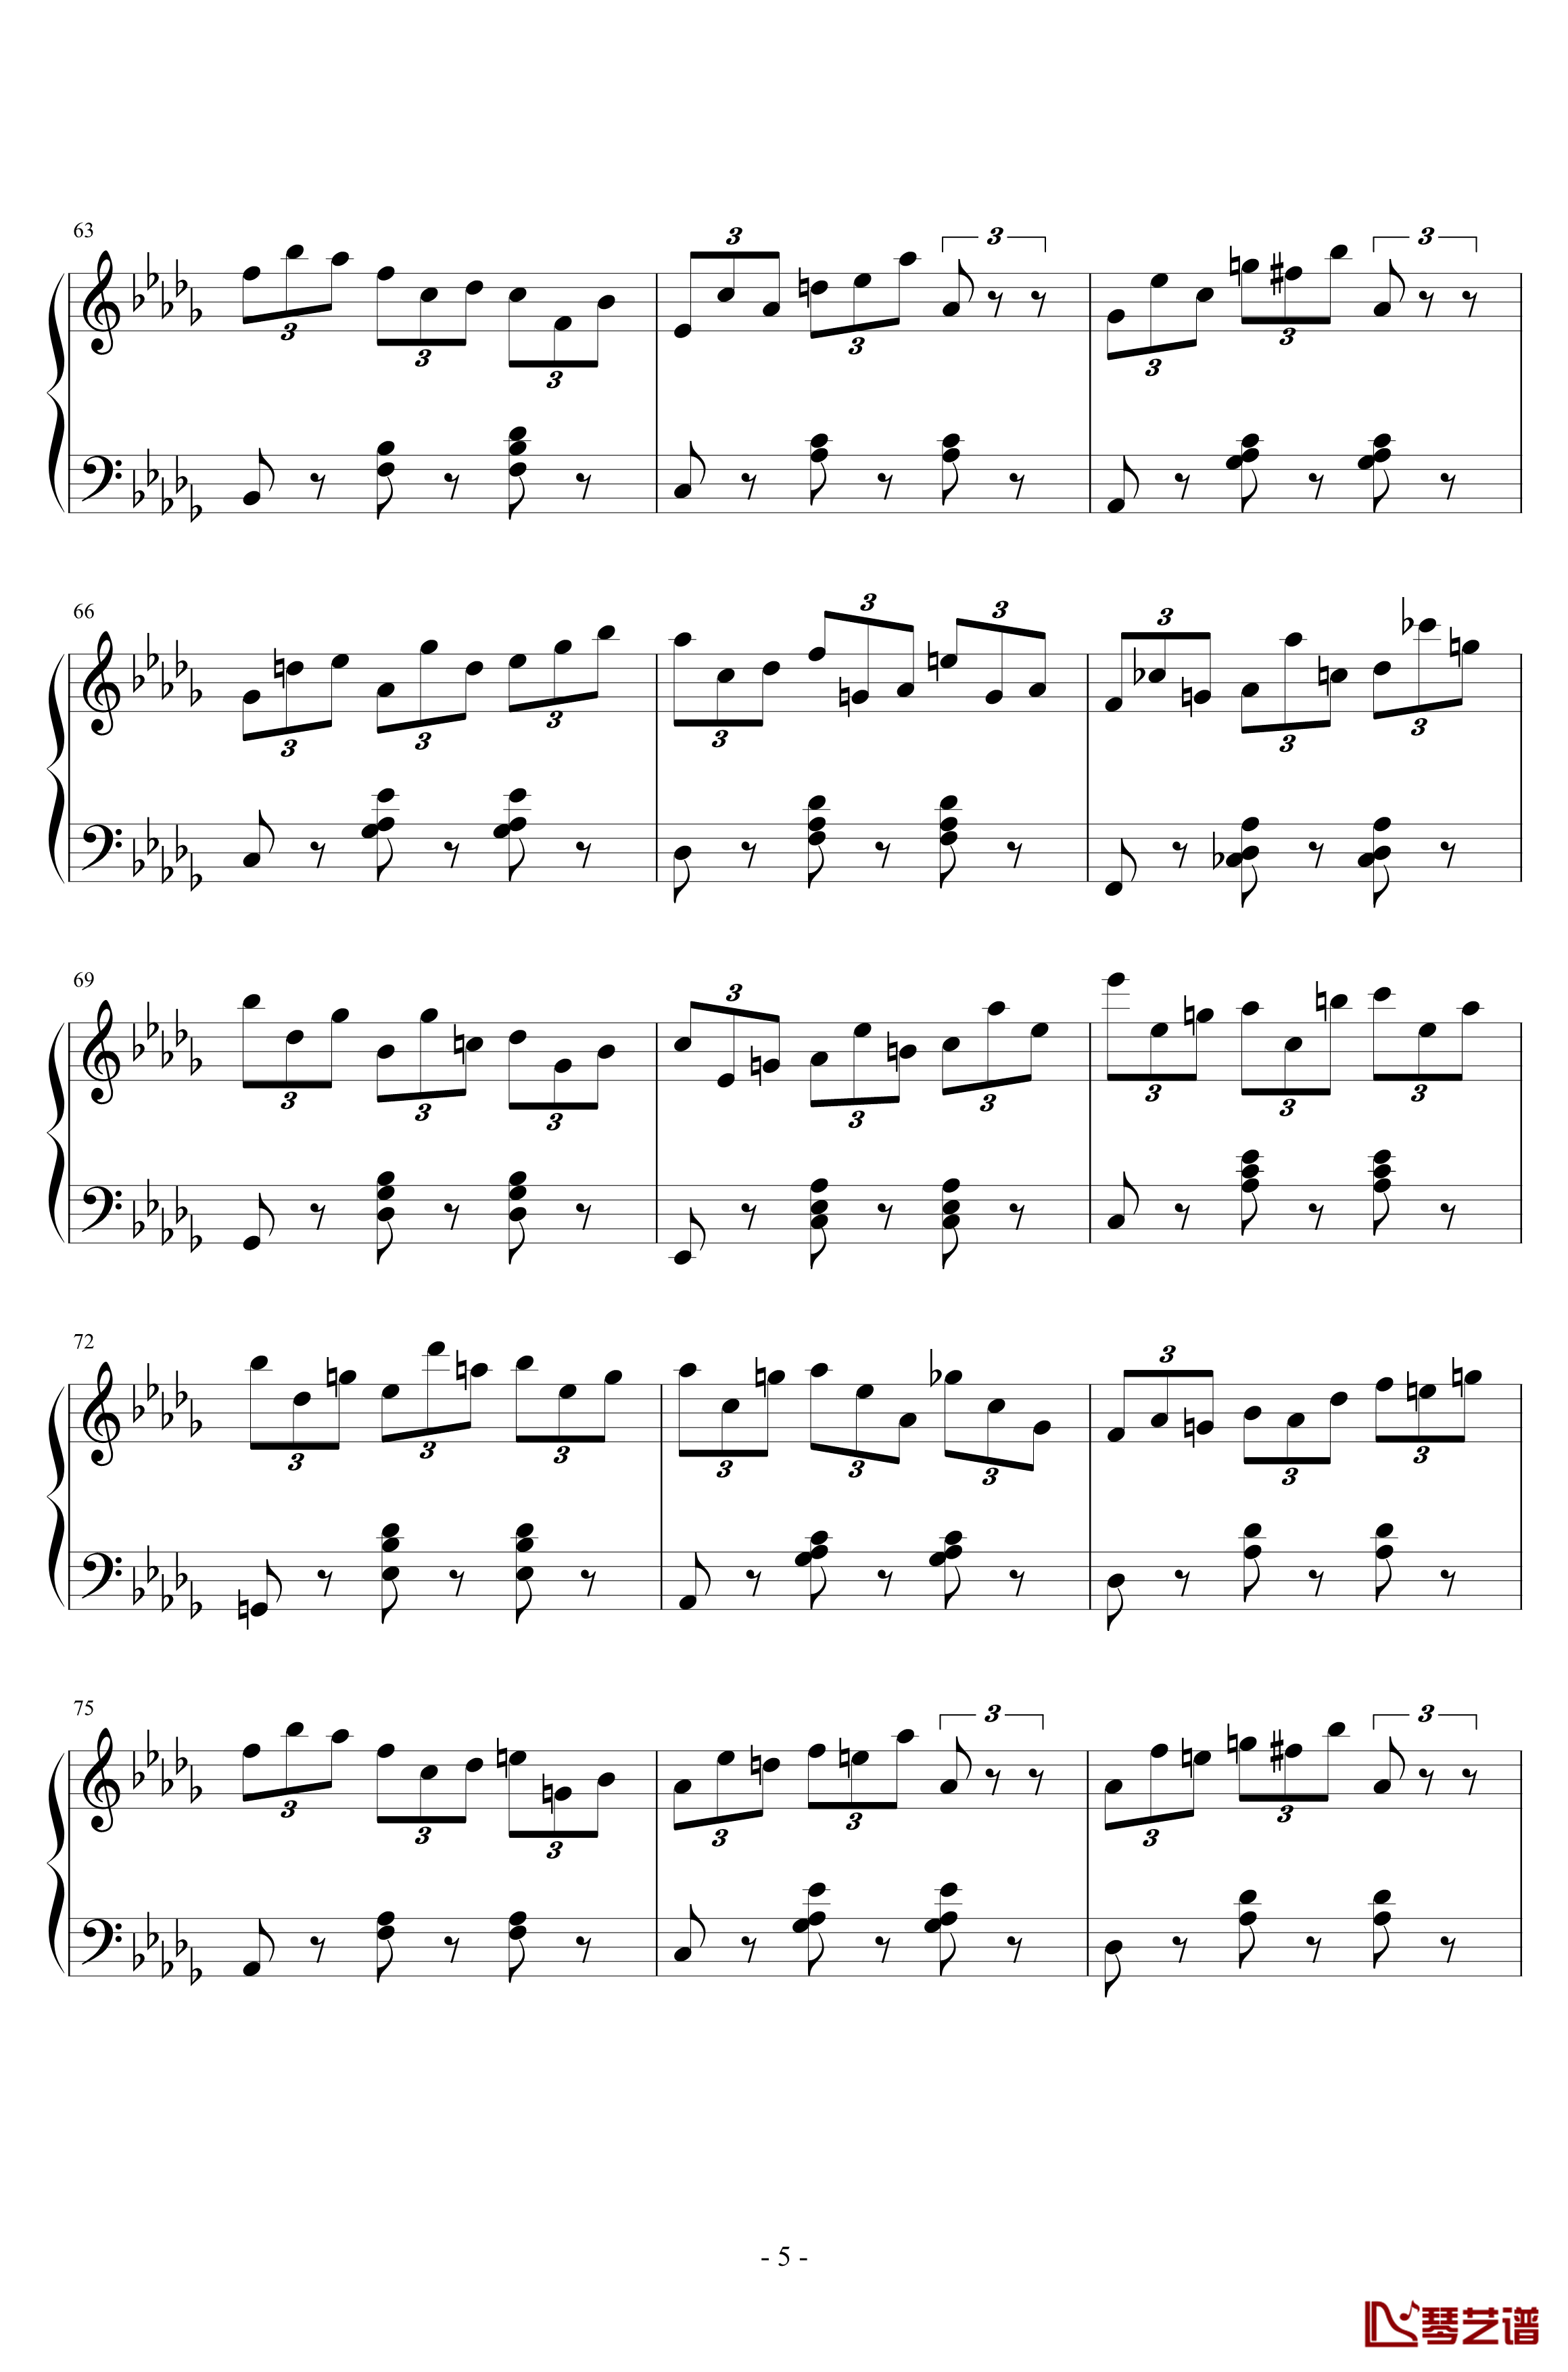 练习曲No.1 Op.6 降D大调练习曲钢琴谱-江畔新绿5